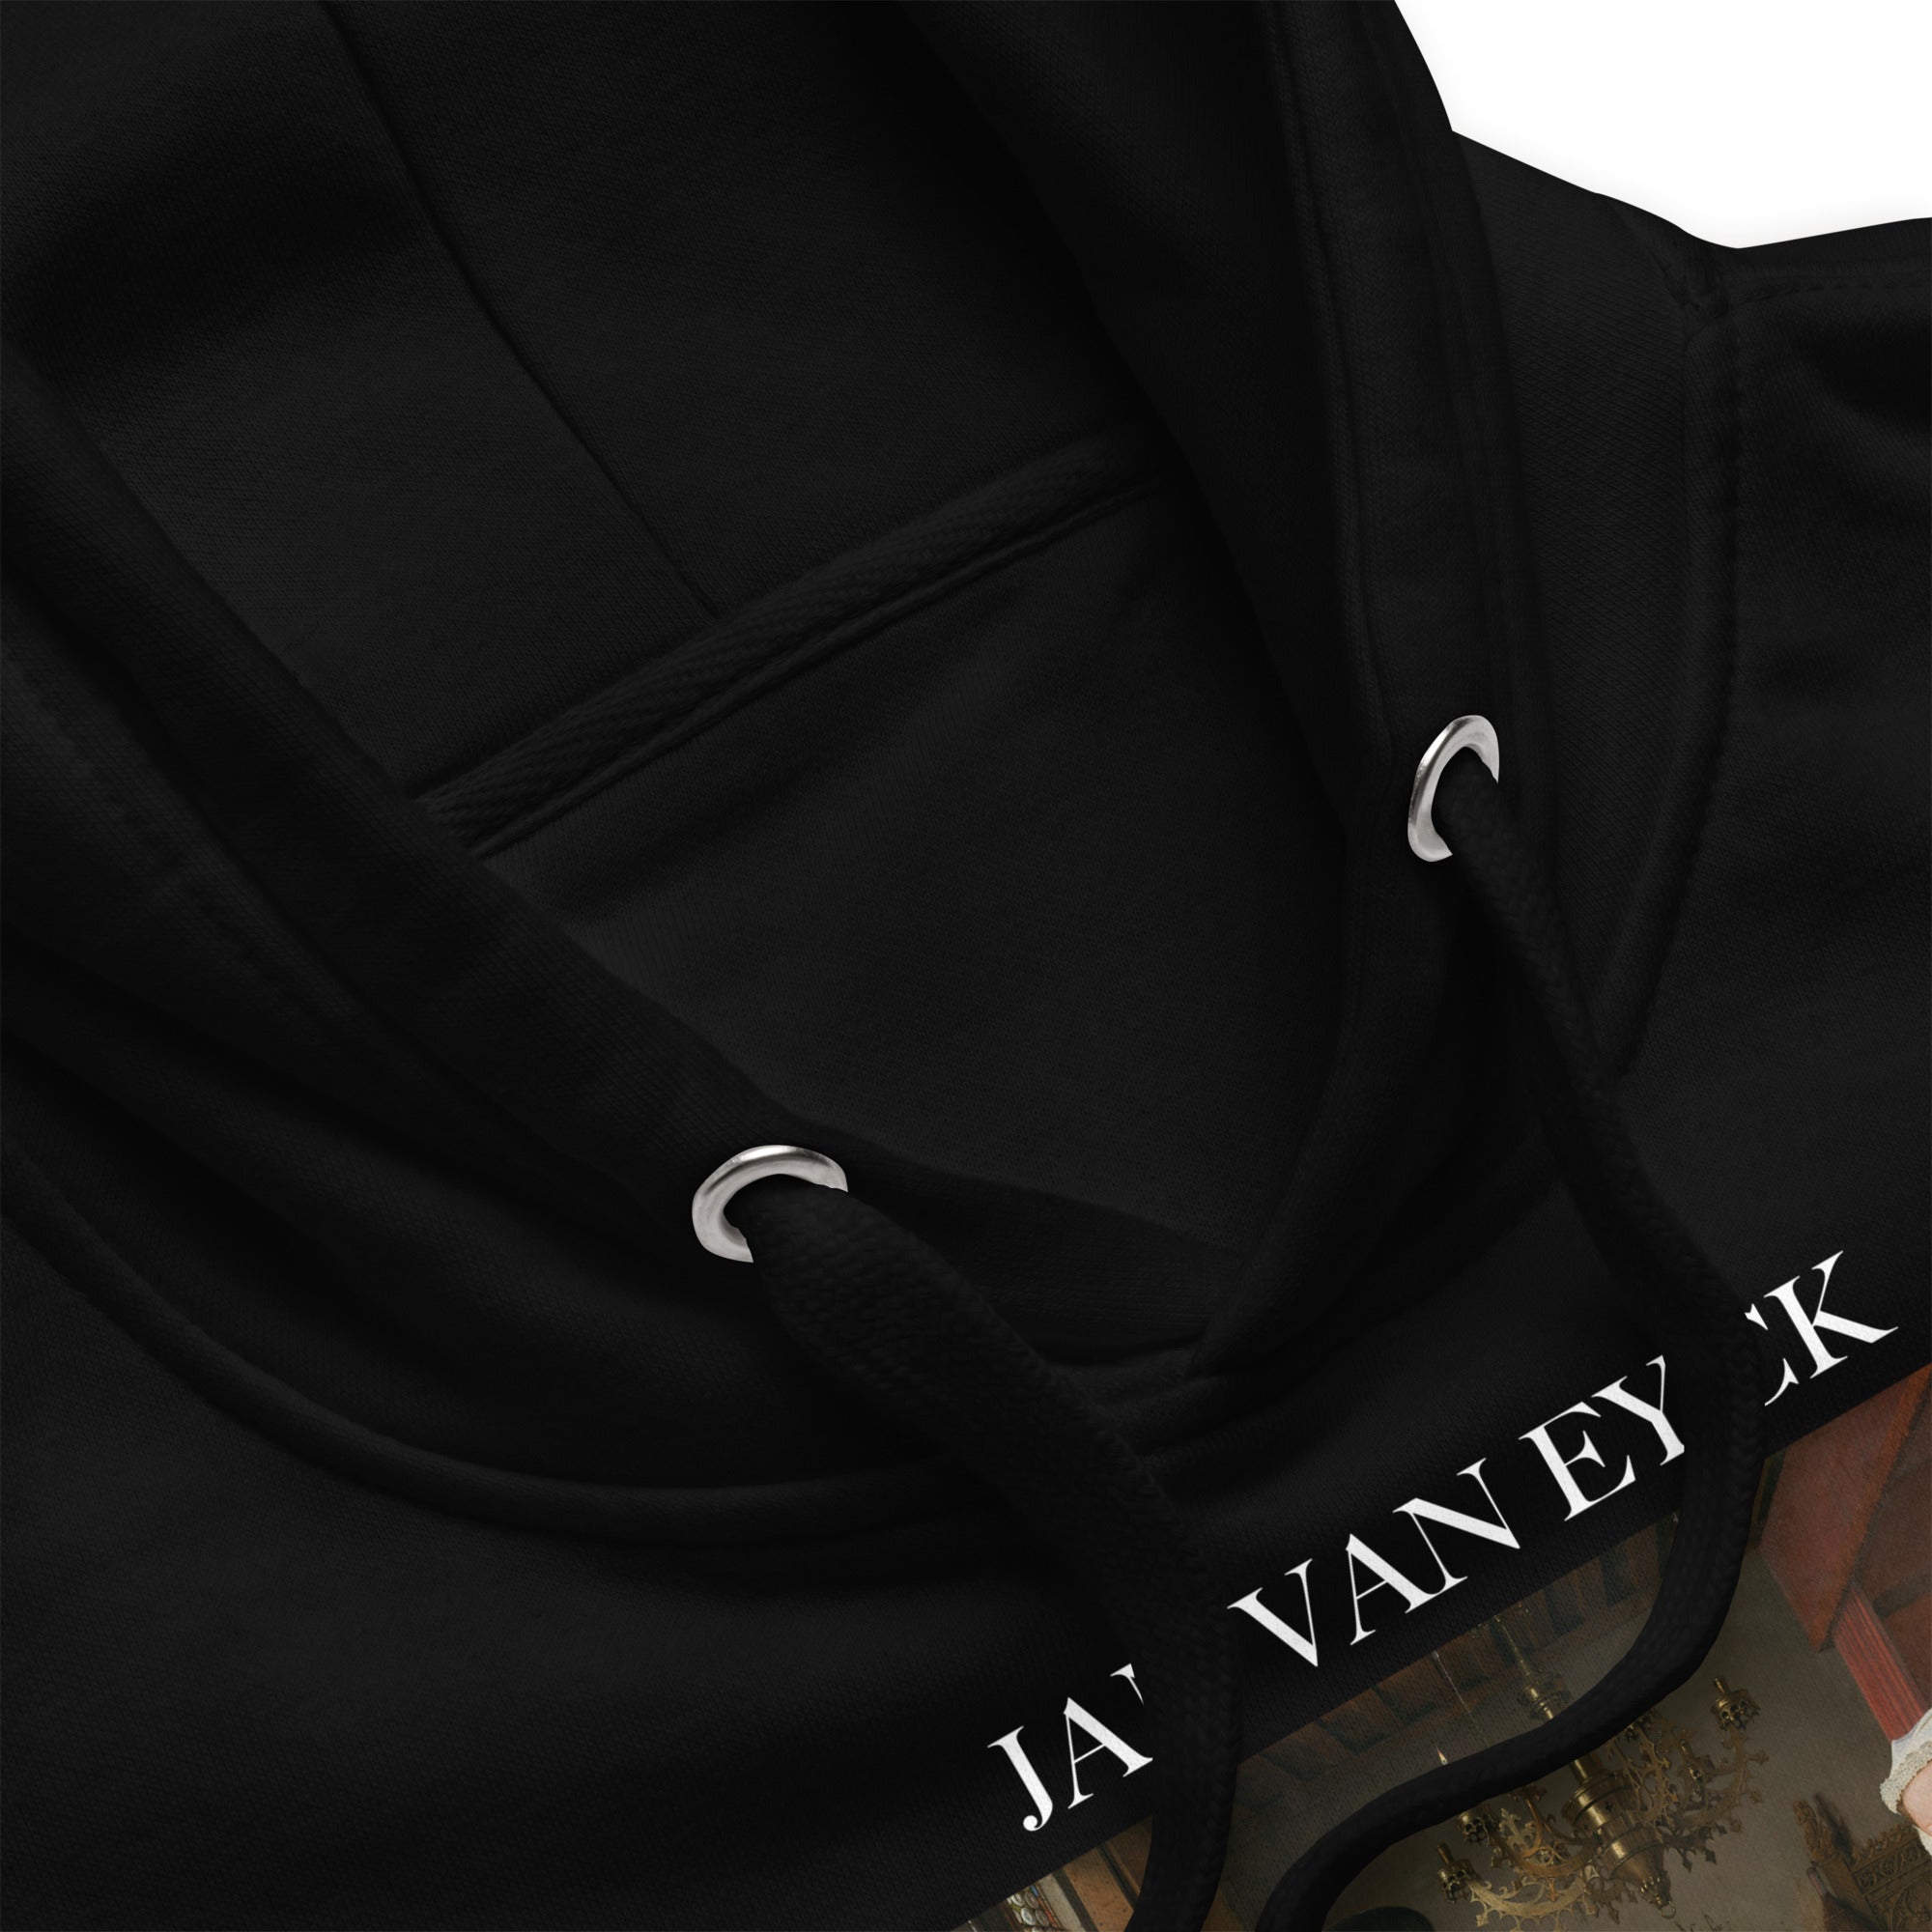 Jan van Eyck 'The Arnolfini Portrait' Famous Painting Hoodie | Unisex Premium Art Hoodie